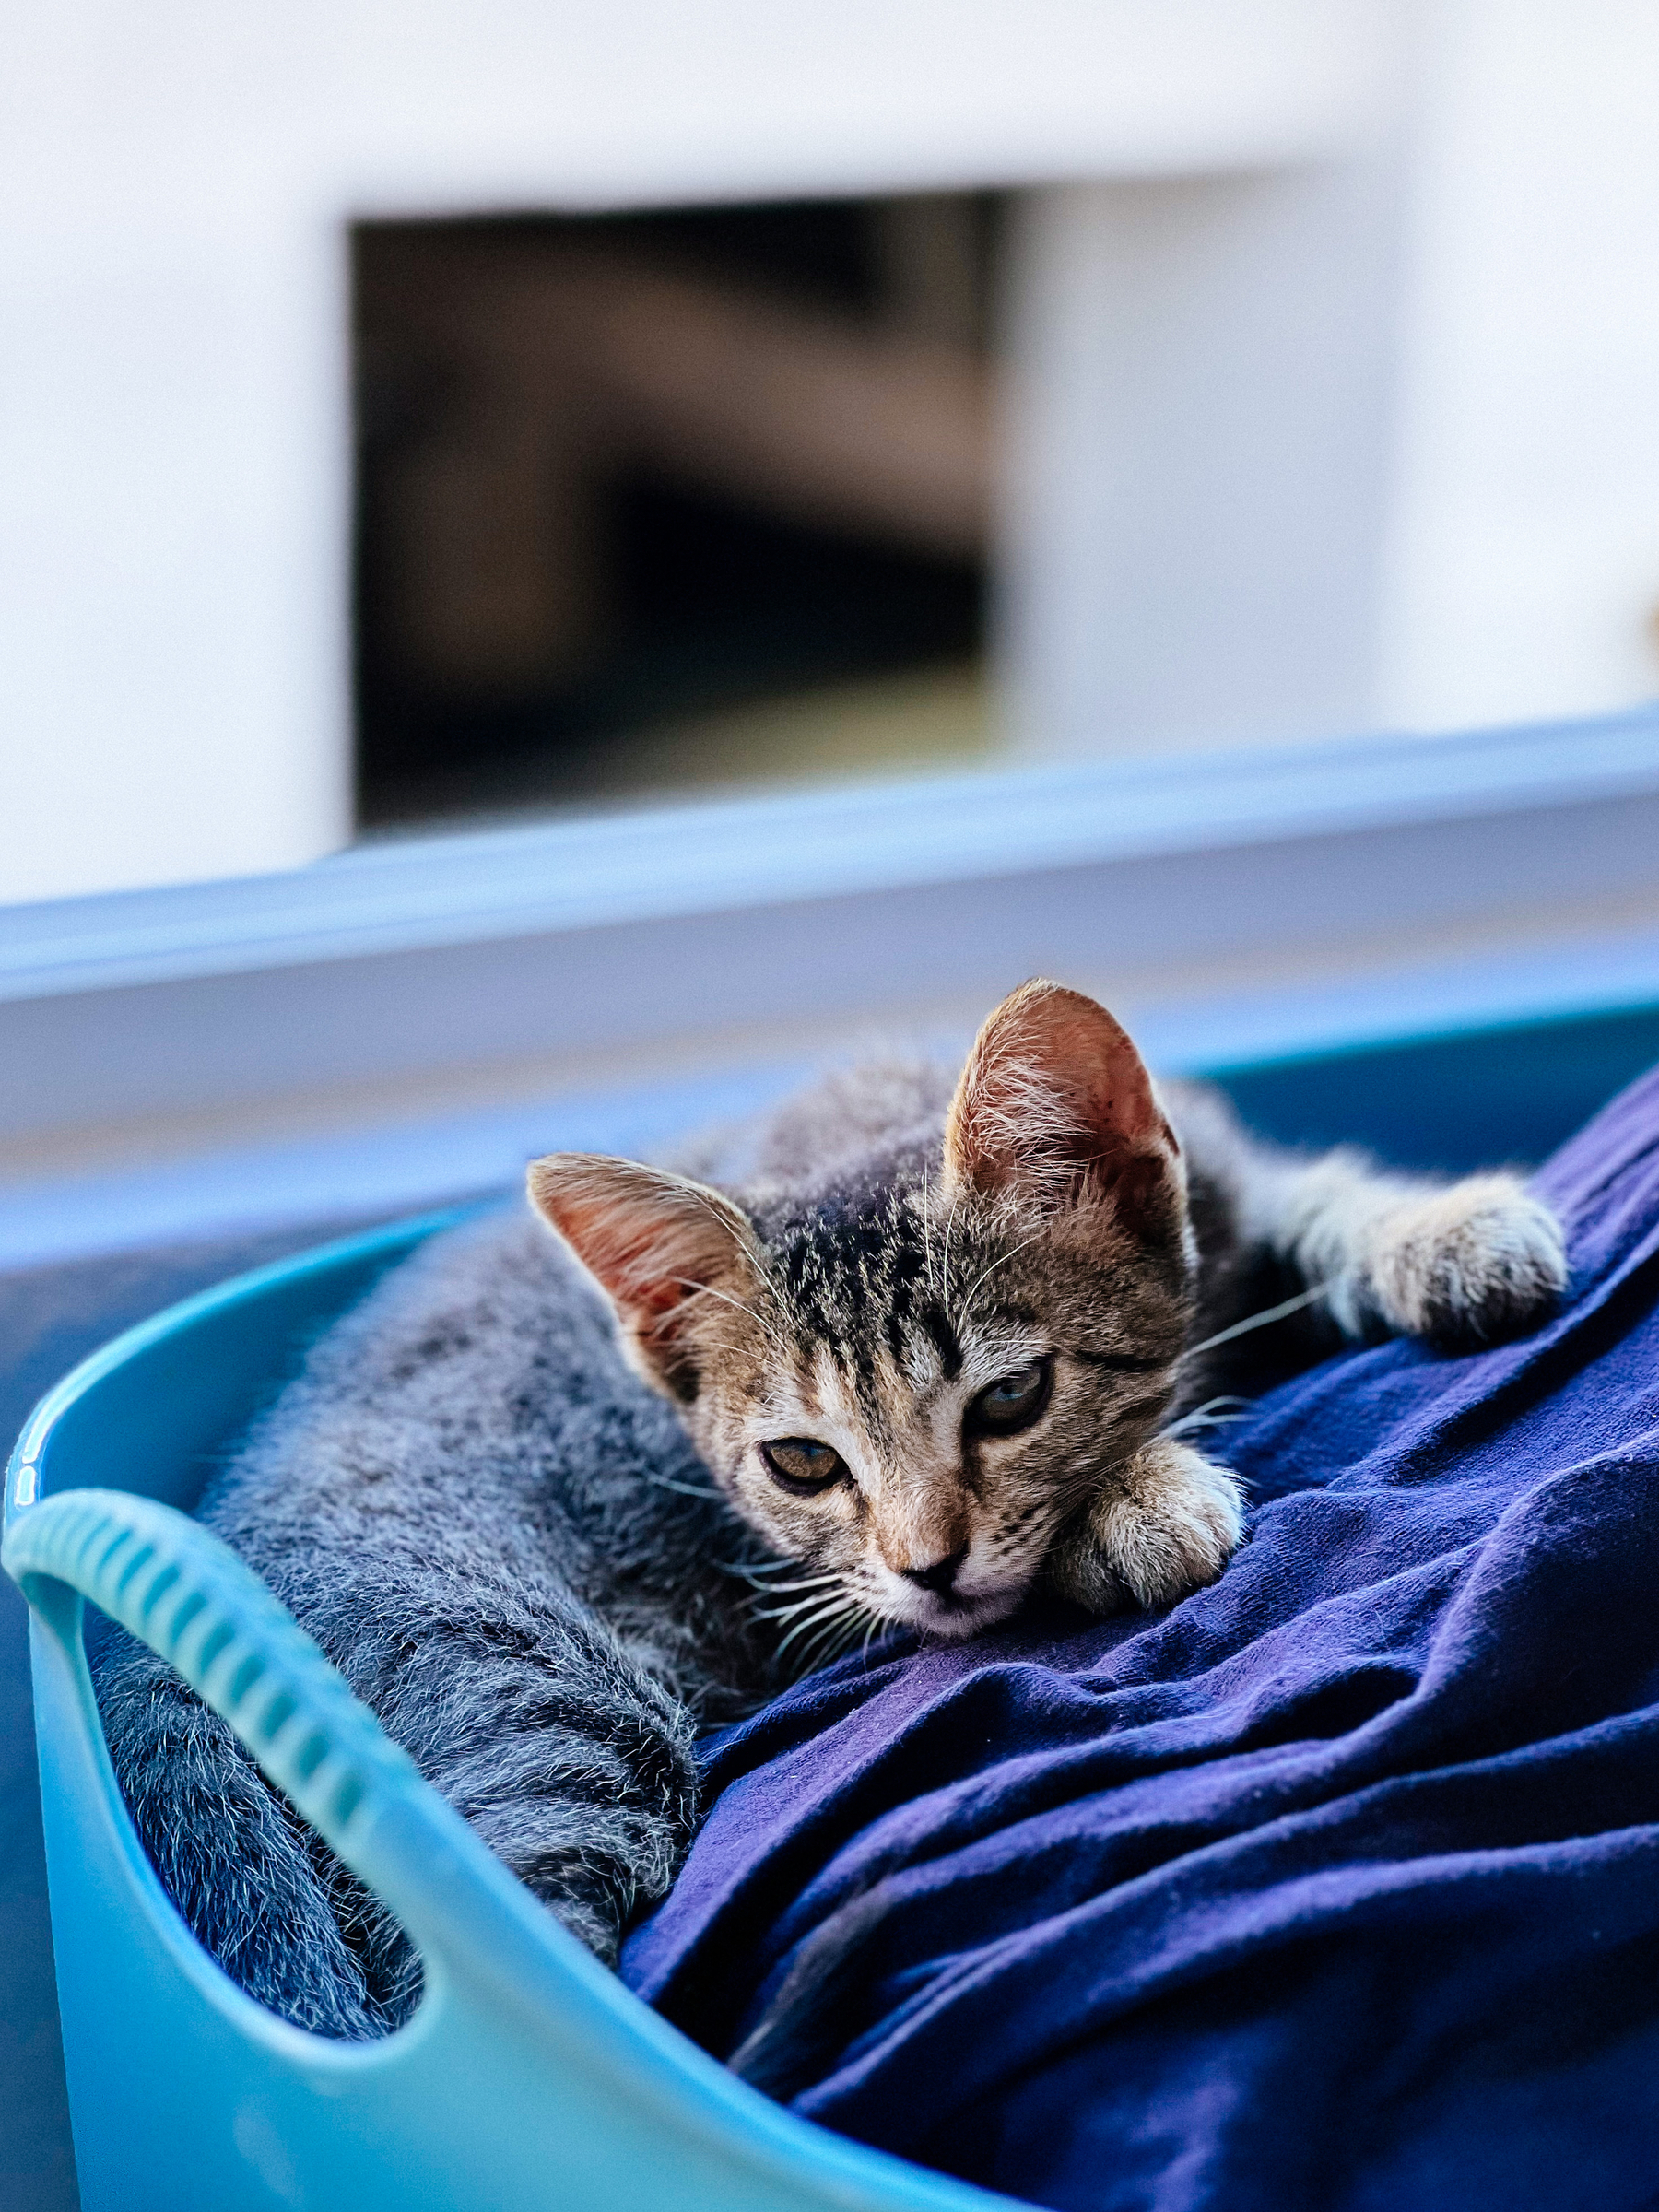 a kitten in a laundry basket